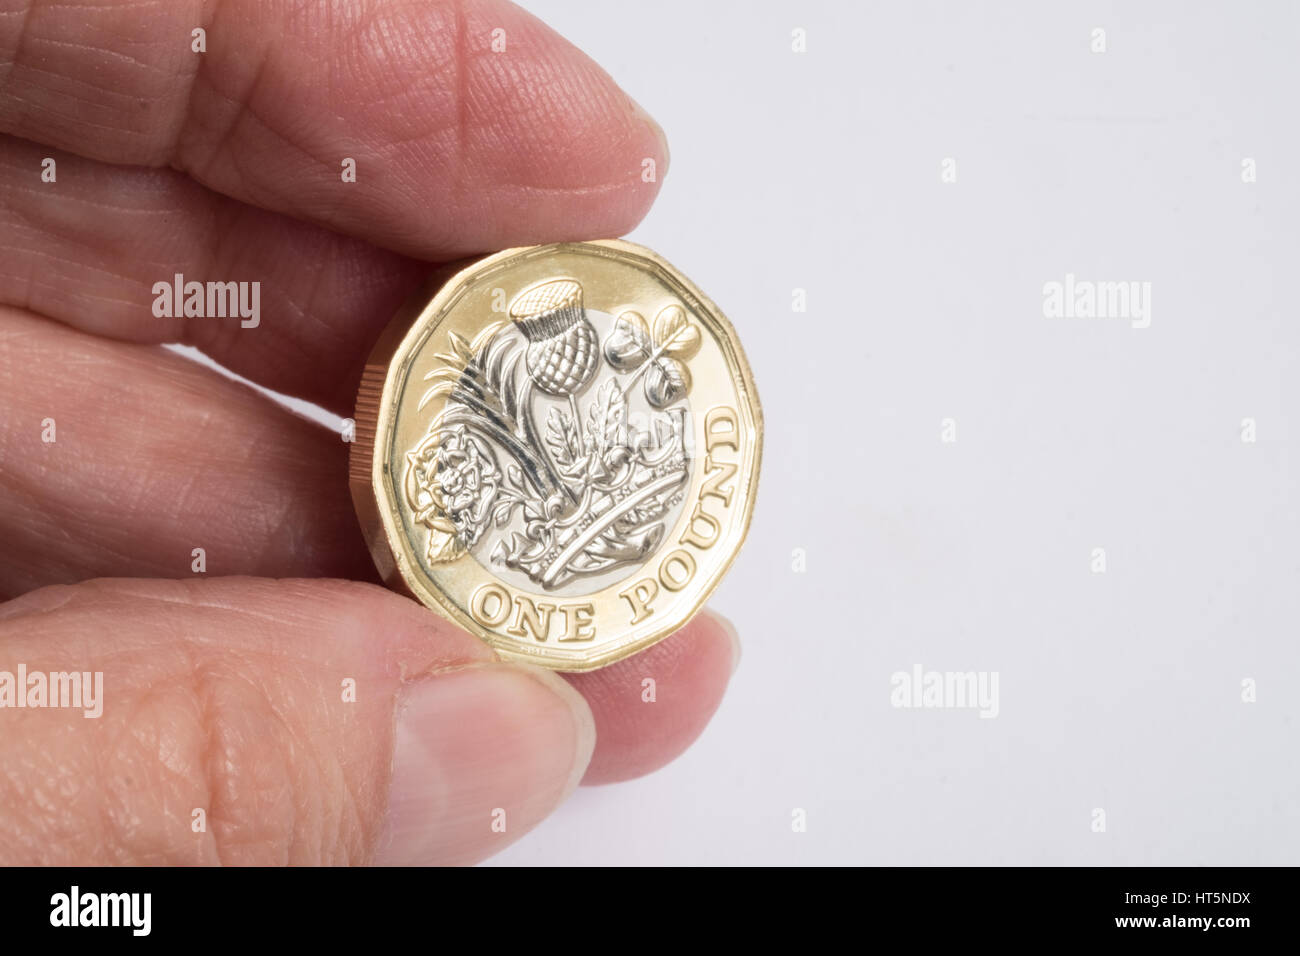 Die neue Form der 2017-Pfund-Münze statt zwischen den Fingern Stockfoto